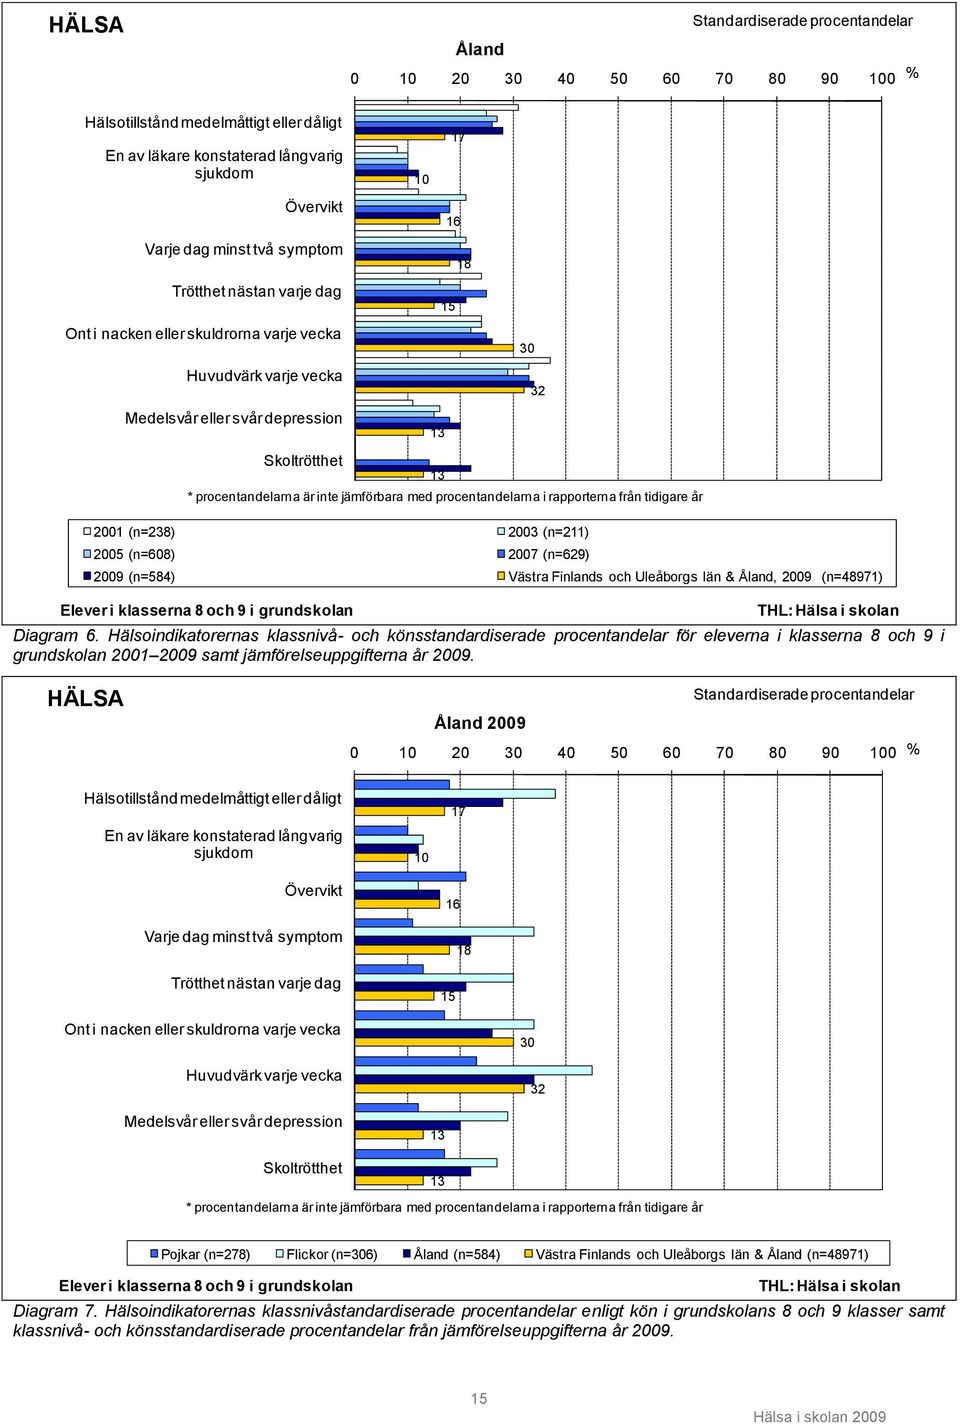 2007 (n=629) 13 * procentandelarna är inte jämförbara med procentandelarna i rapporterna från tidigare år 2009 (n=584) Västra Finlands och Uleåborgs län & Åland, 2009 (n=48971) Elever i klasserna 8